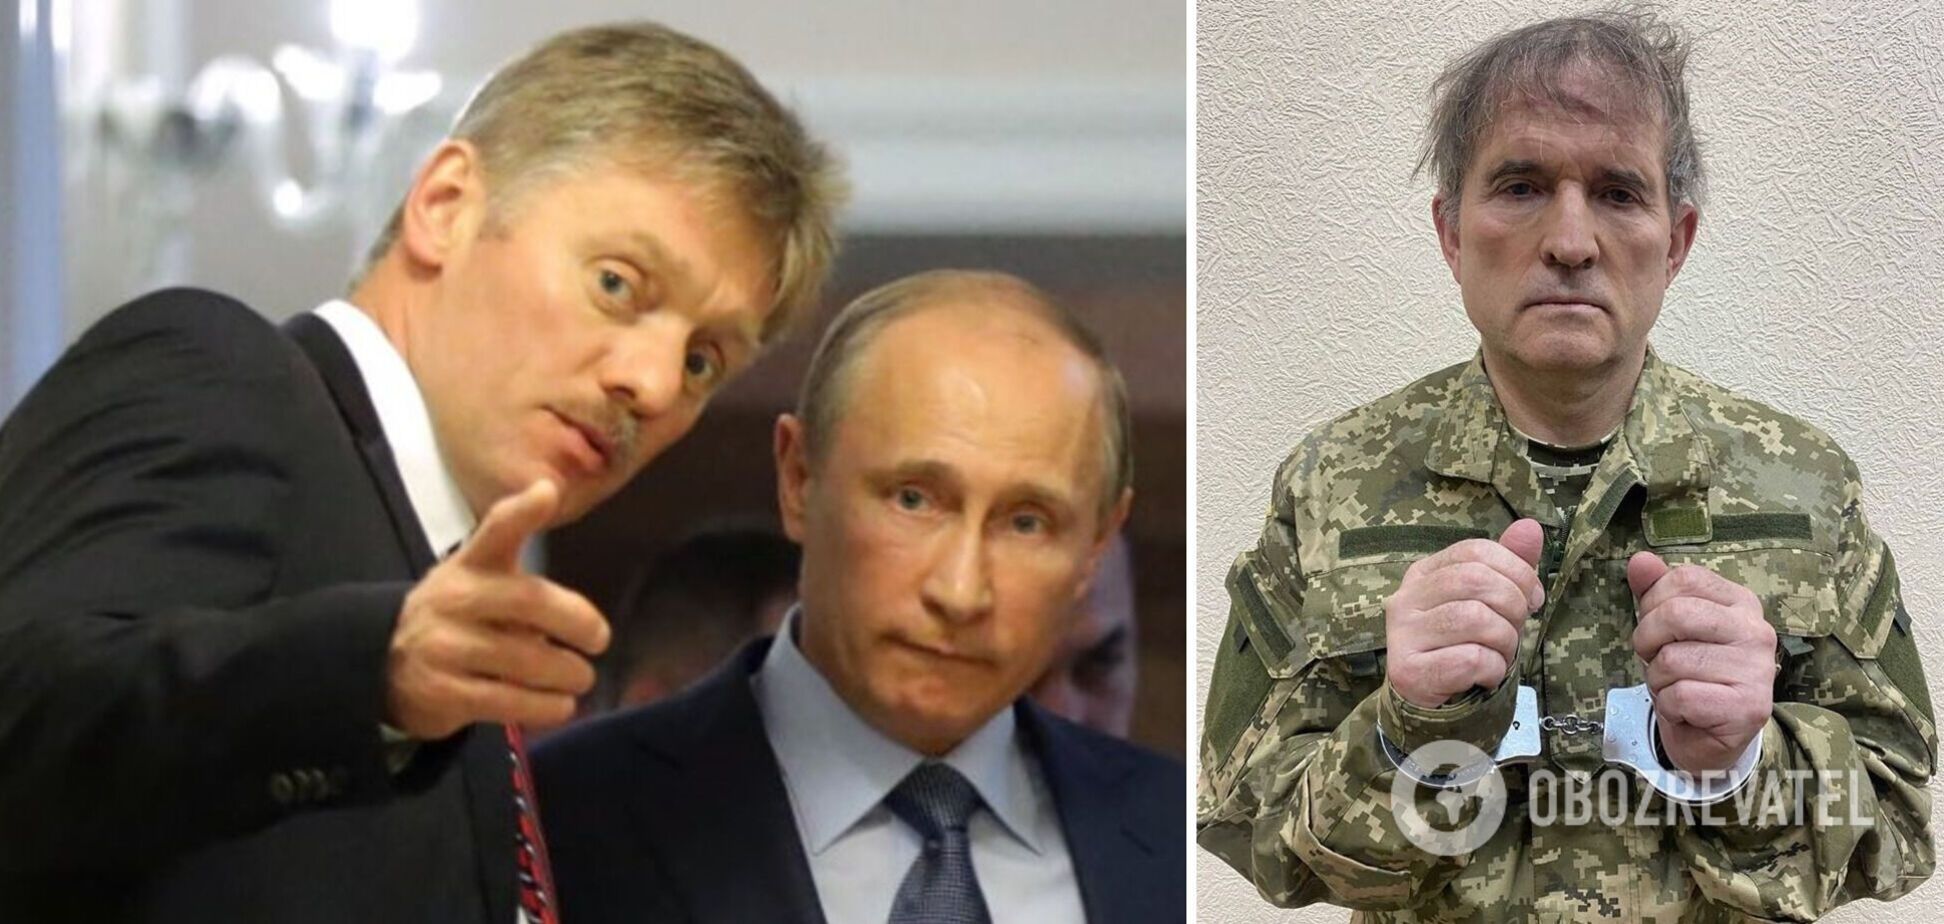 Реакции нет: у Путина заявили, что видели обращение Медведчука с просьбой об обмене